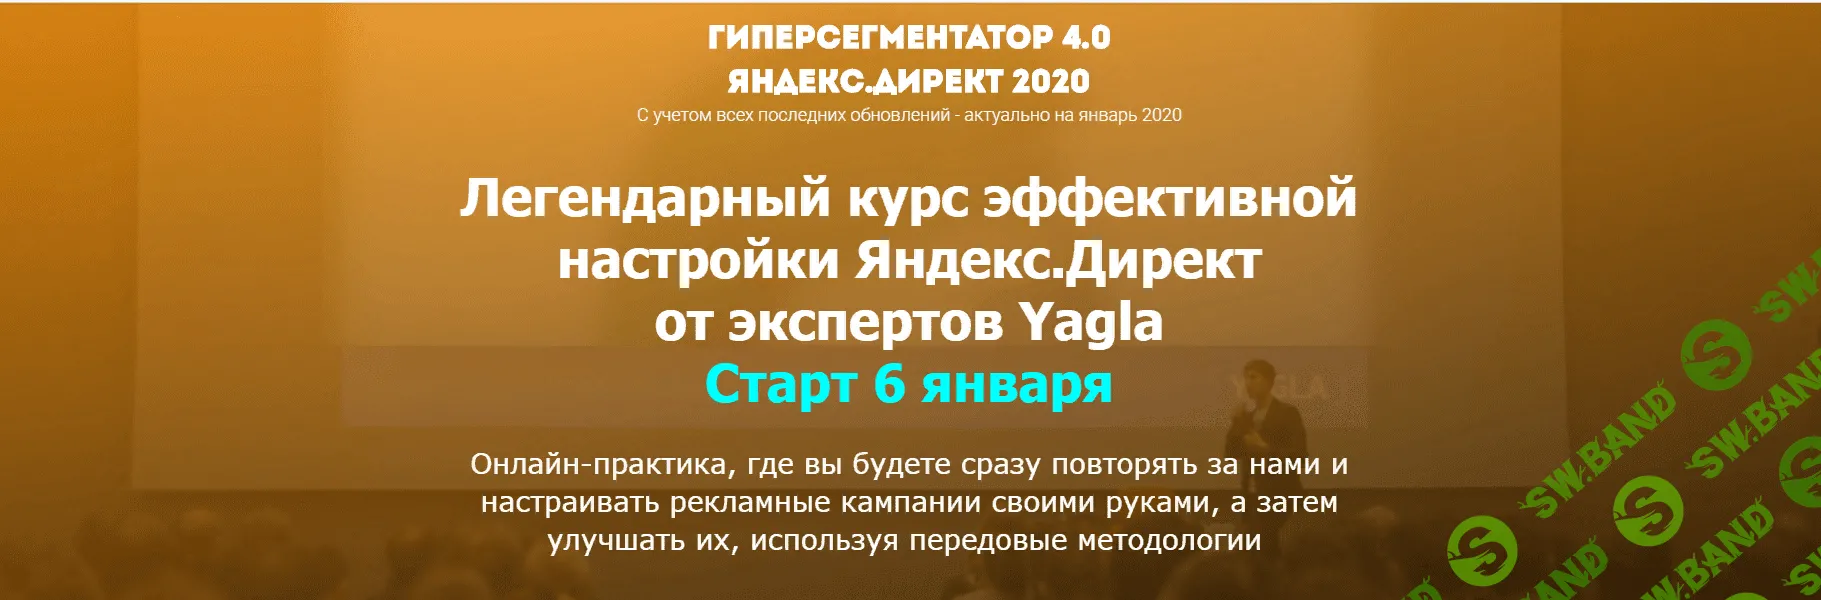 [Александр Алимов, Александр Машкарев] Гиперсегментатор 4.0. Яндекс.Директ 2020 (2020)